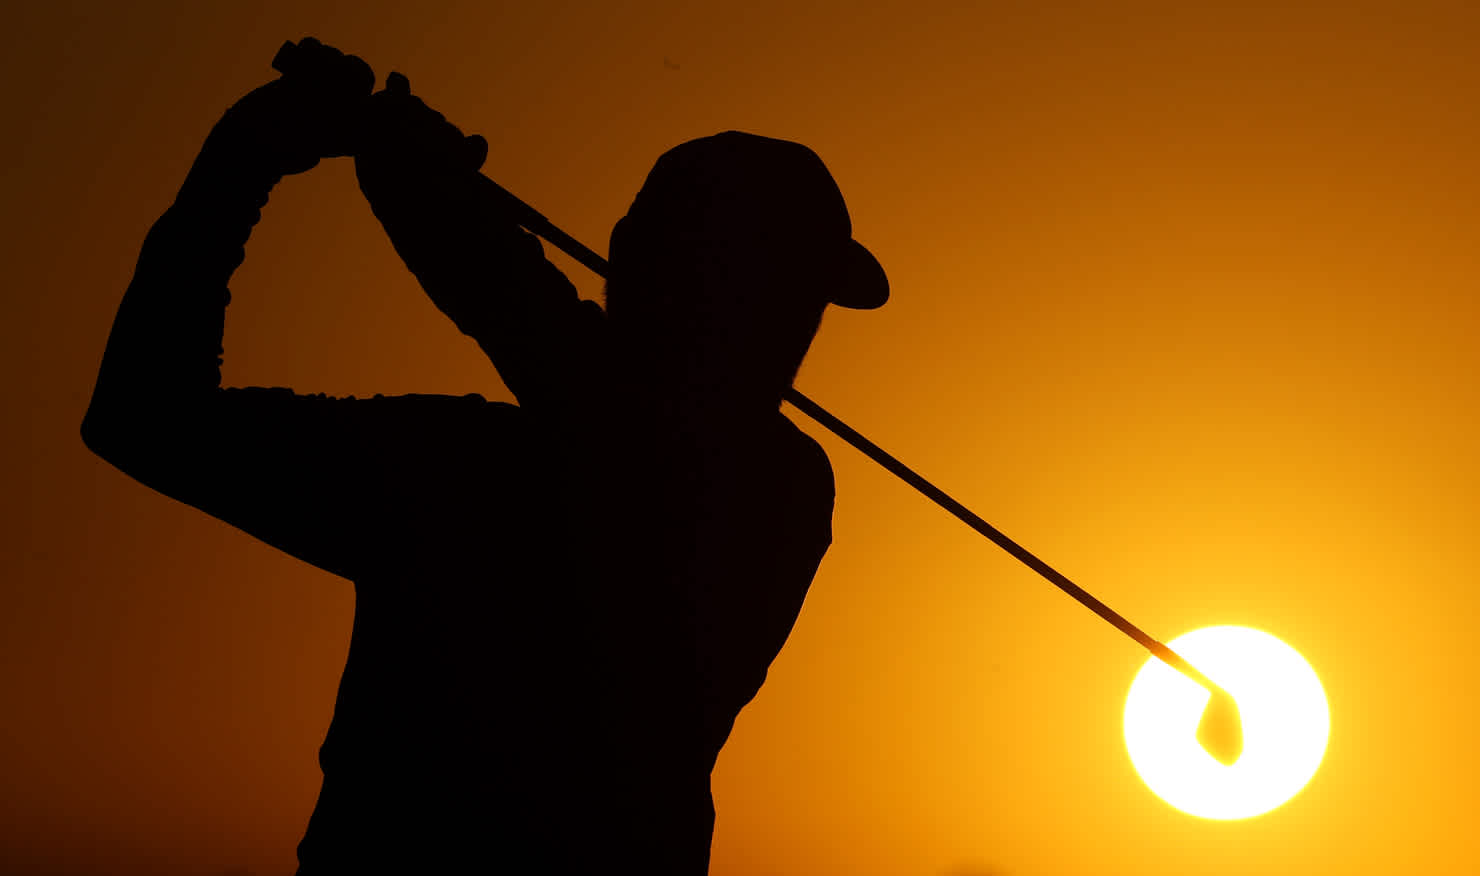 Golf is enjoying a surge in interest around Australia. 